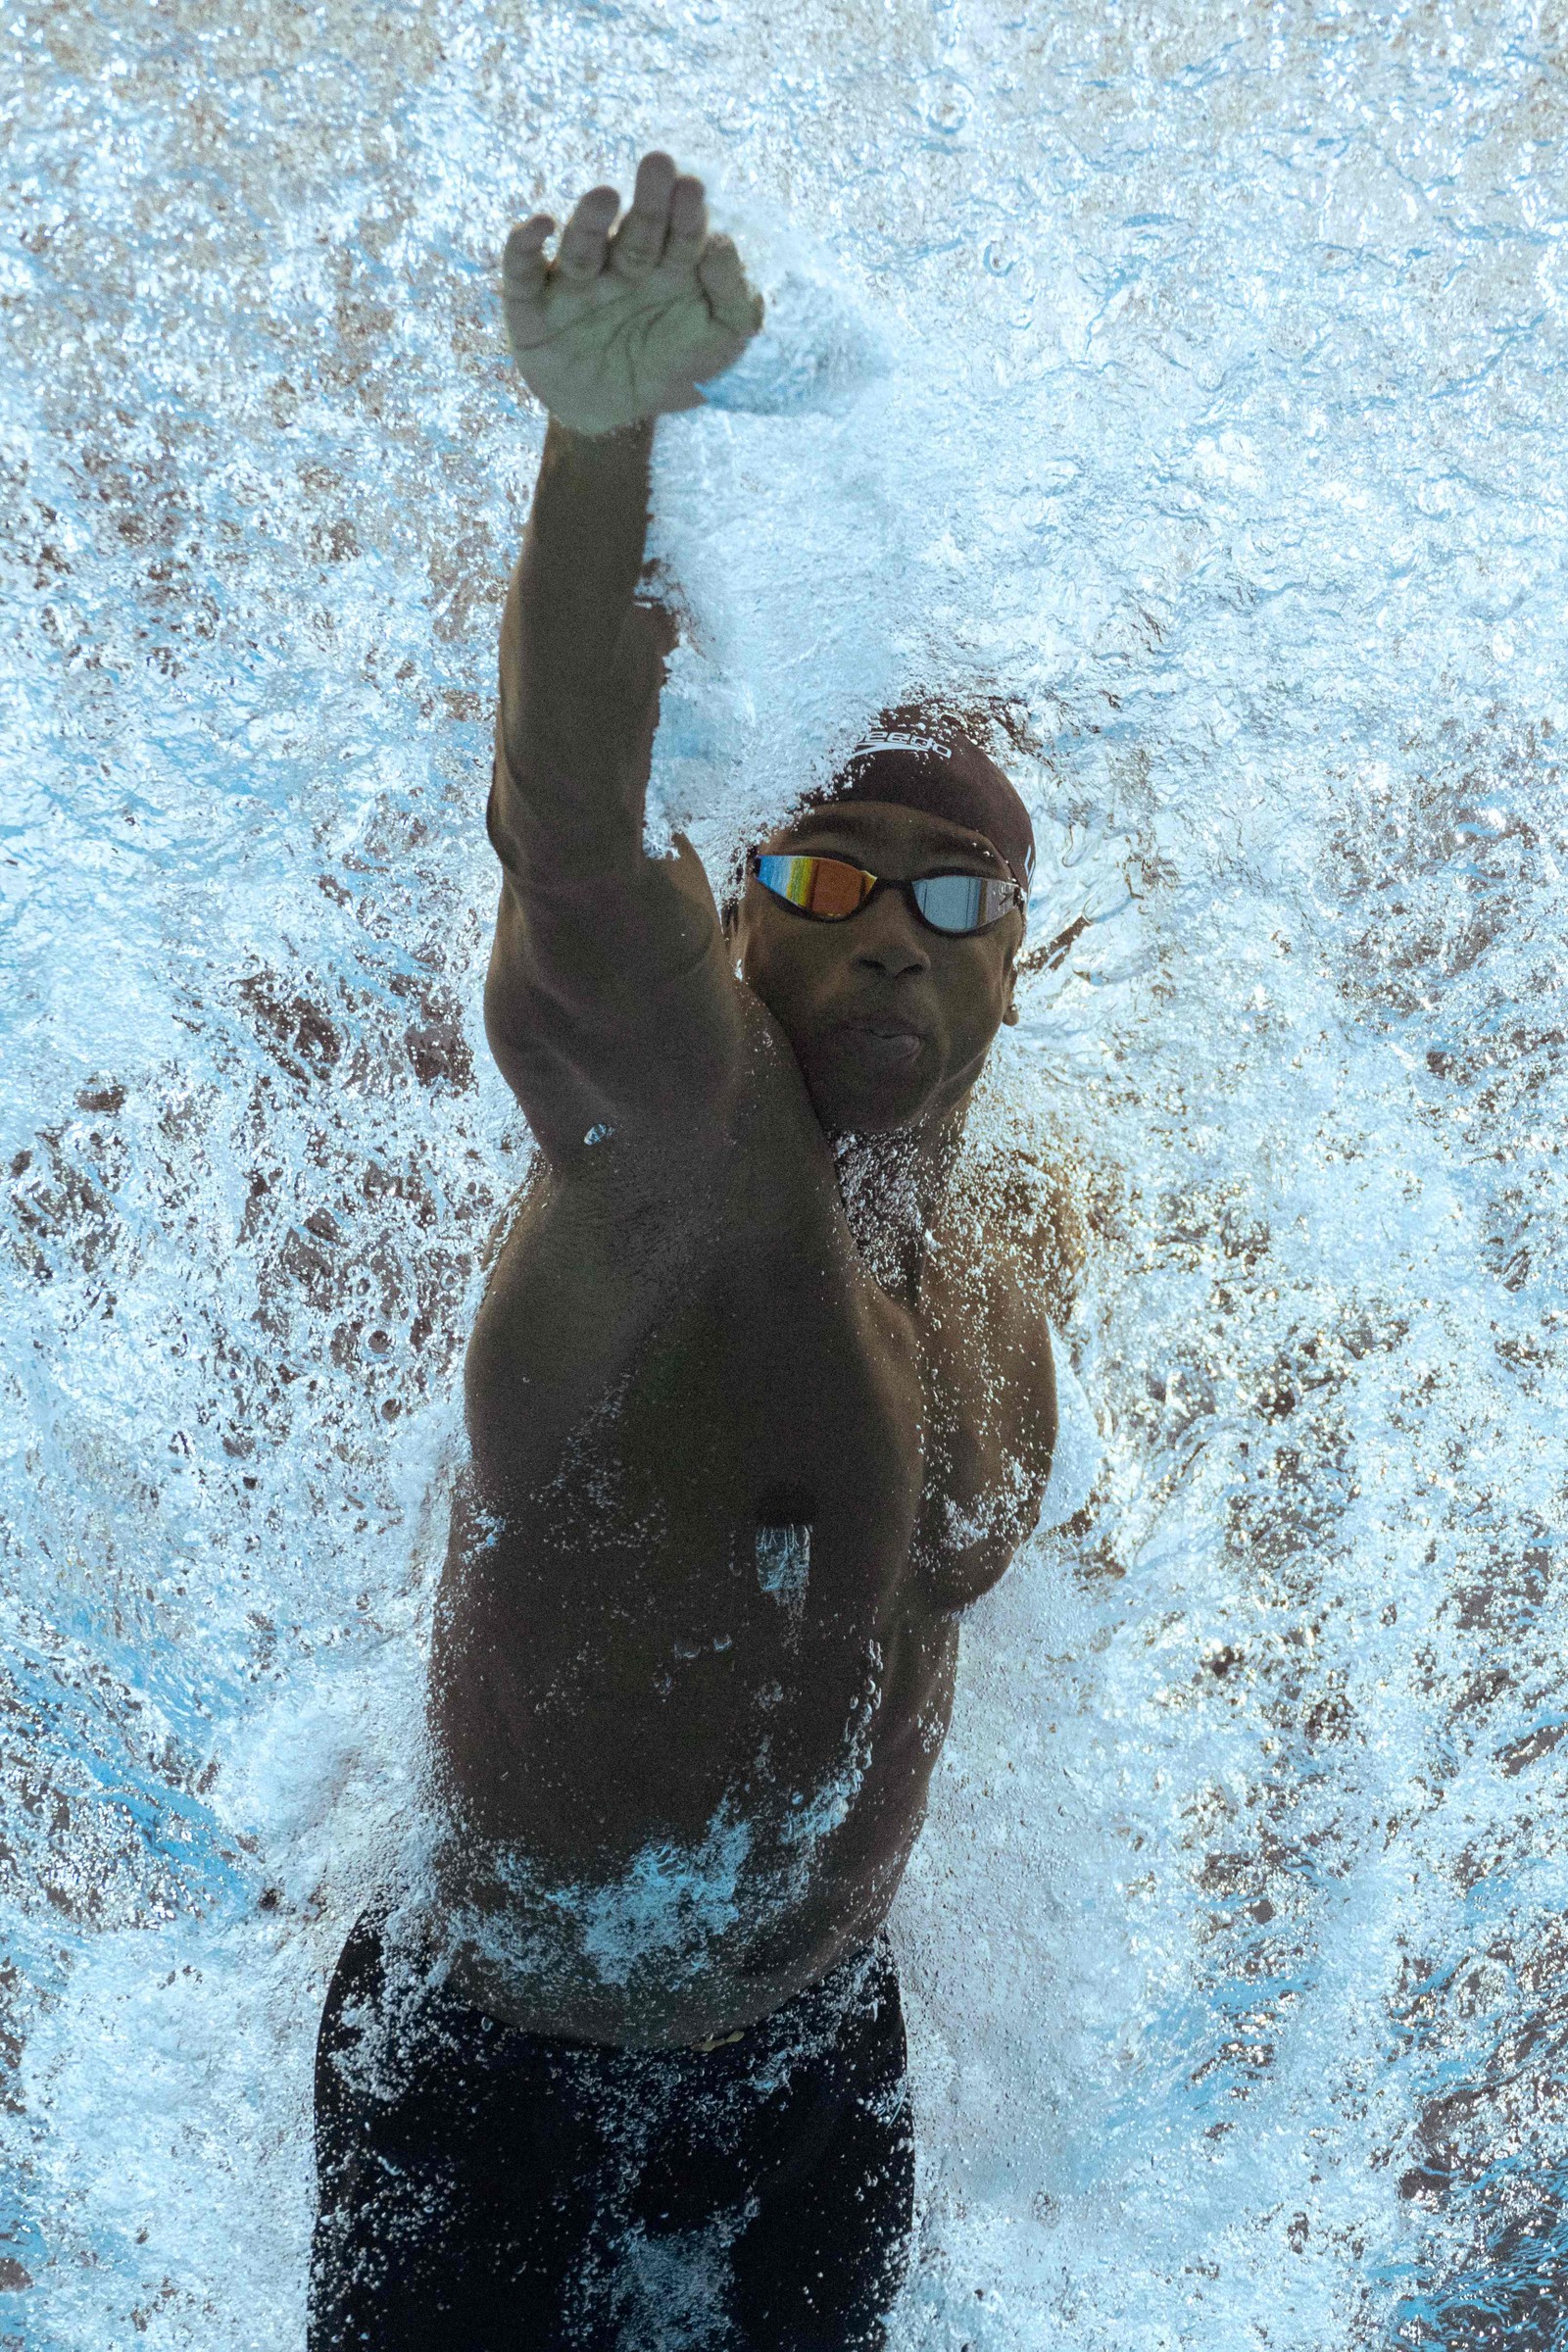 O canadense Joshua Liendo compete nas semifinais dos 50m livre masculino durante o Campeonato Mundial de Esportes Aquáticos de Budapeste — Foto: OLI SCARFF